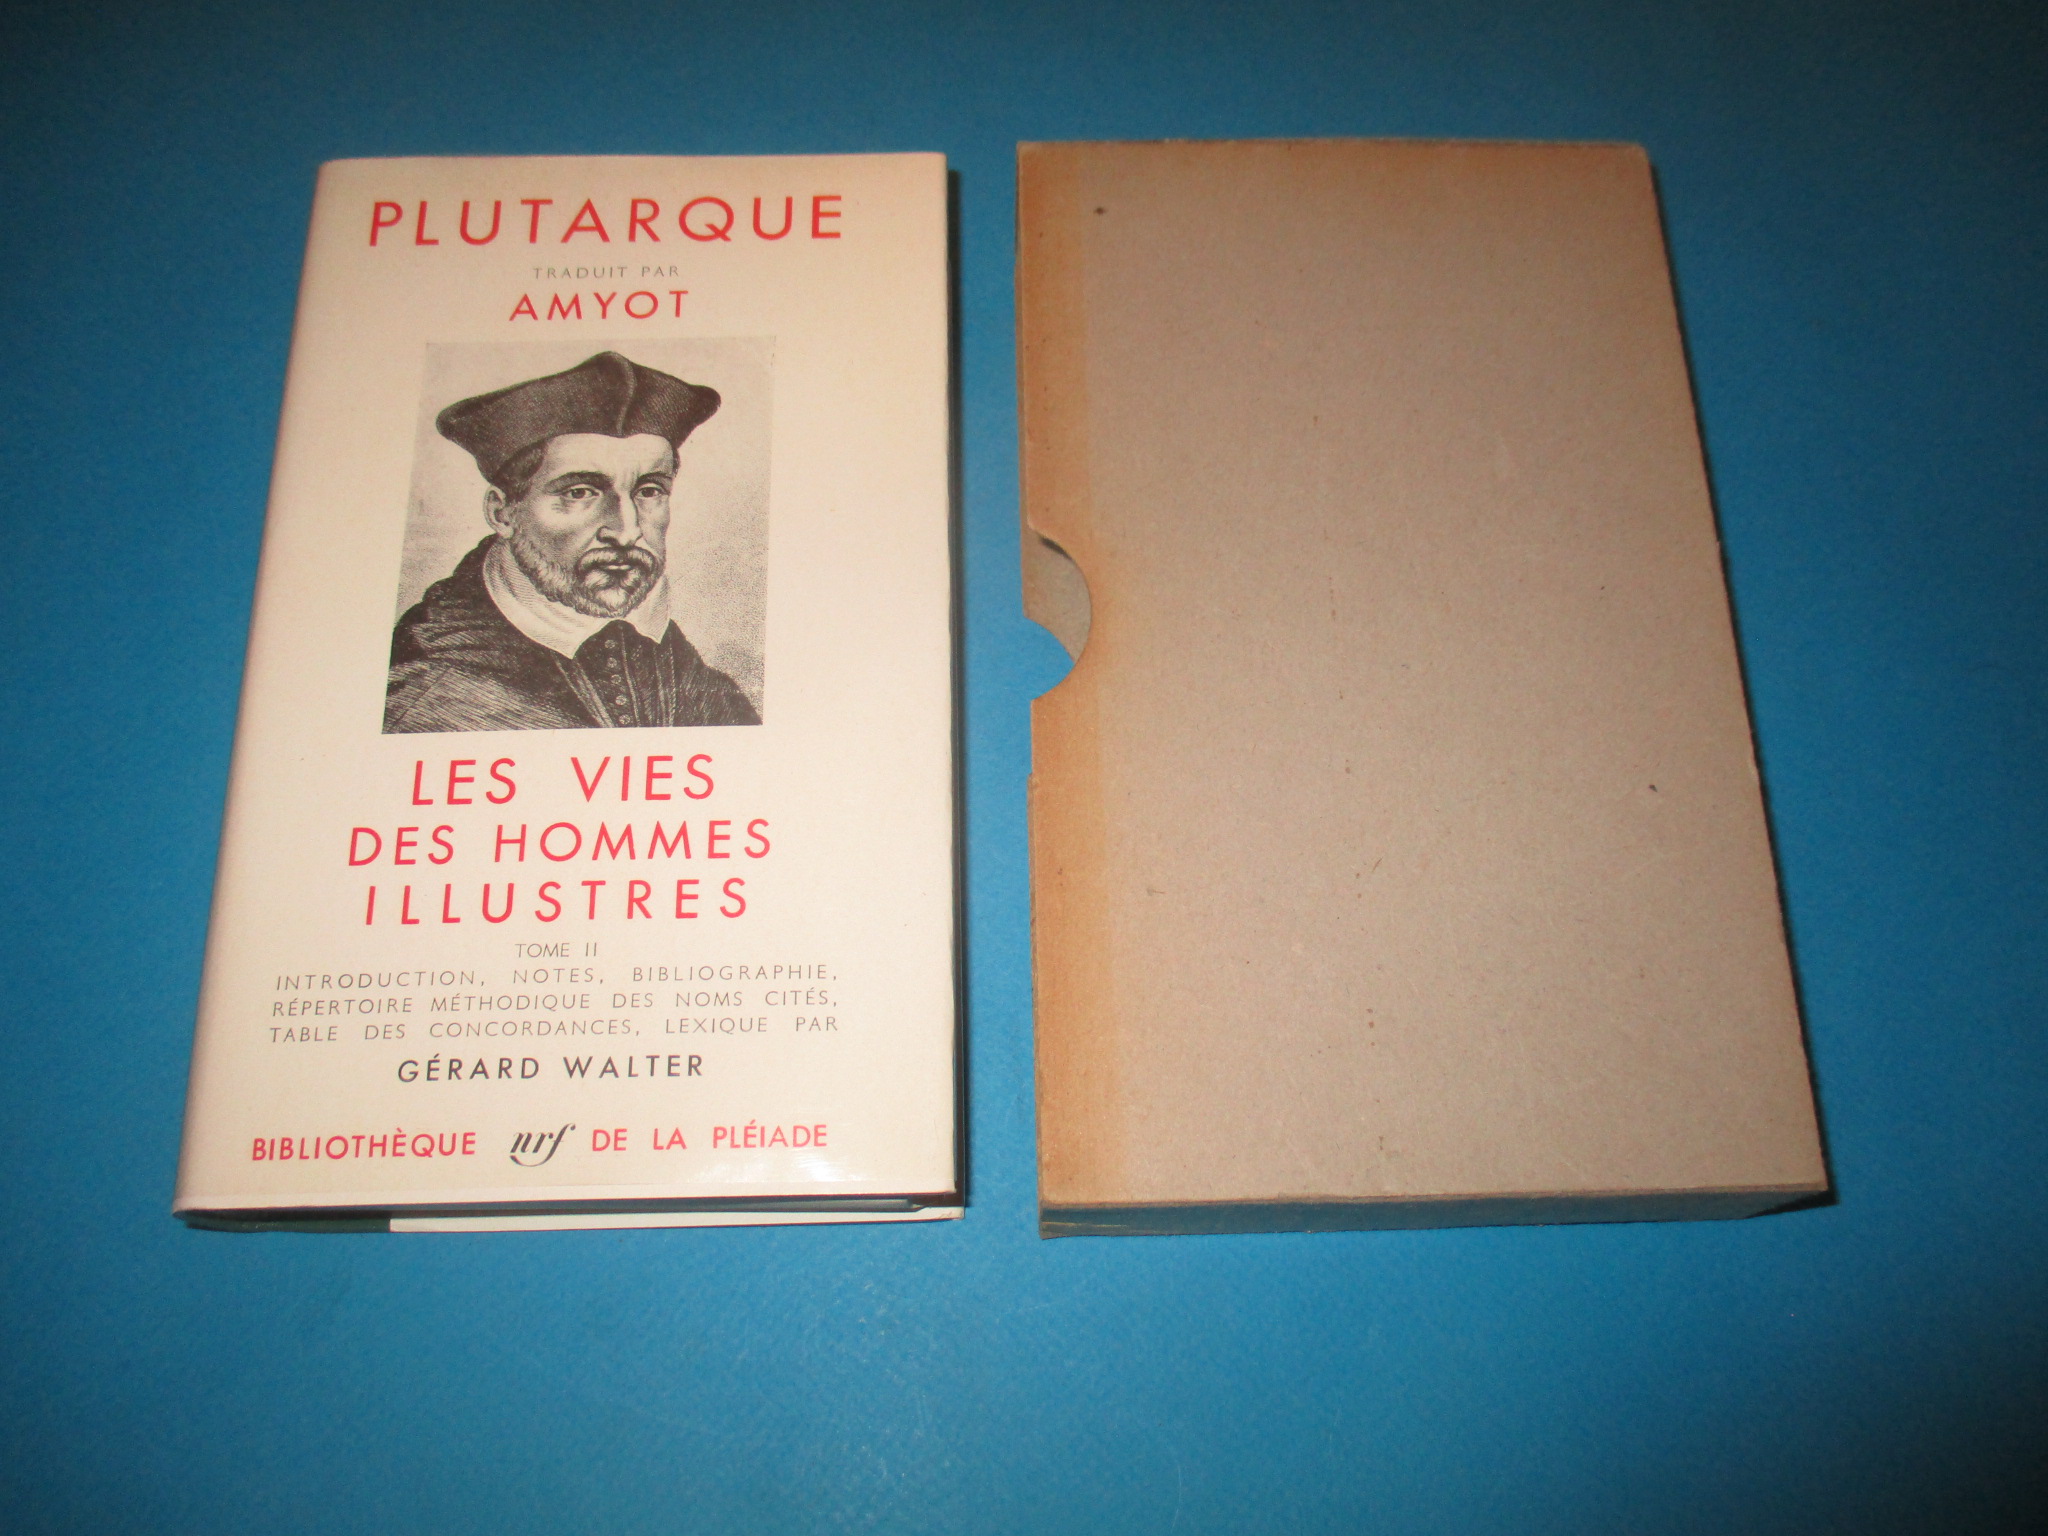 Les vies des hommes illustres II, Plutarque, traduit par Amyot, tome 2, La Pléiade 1959